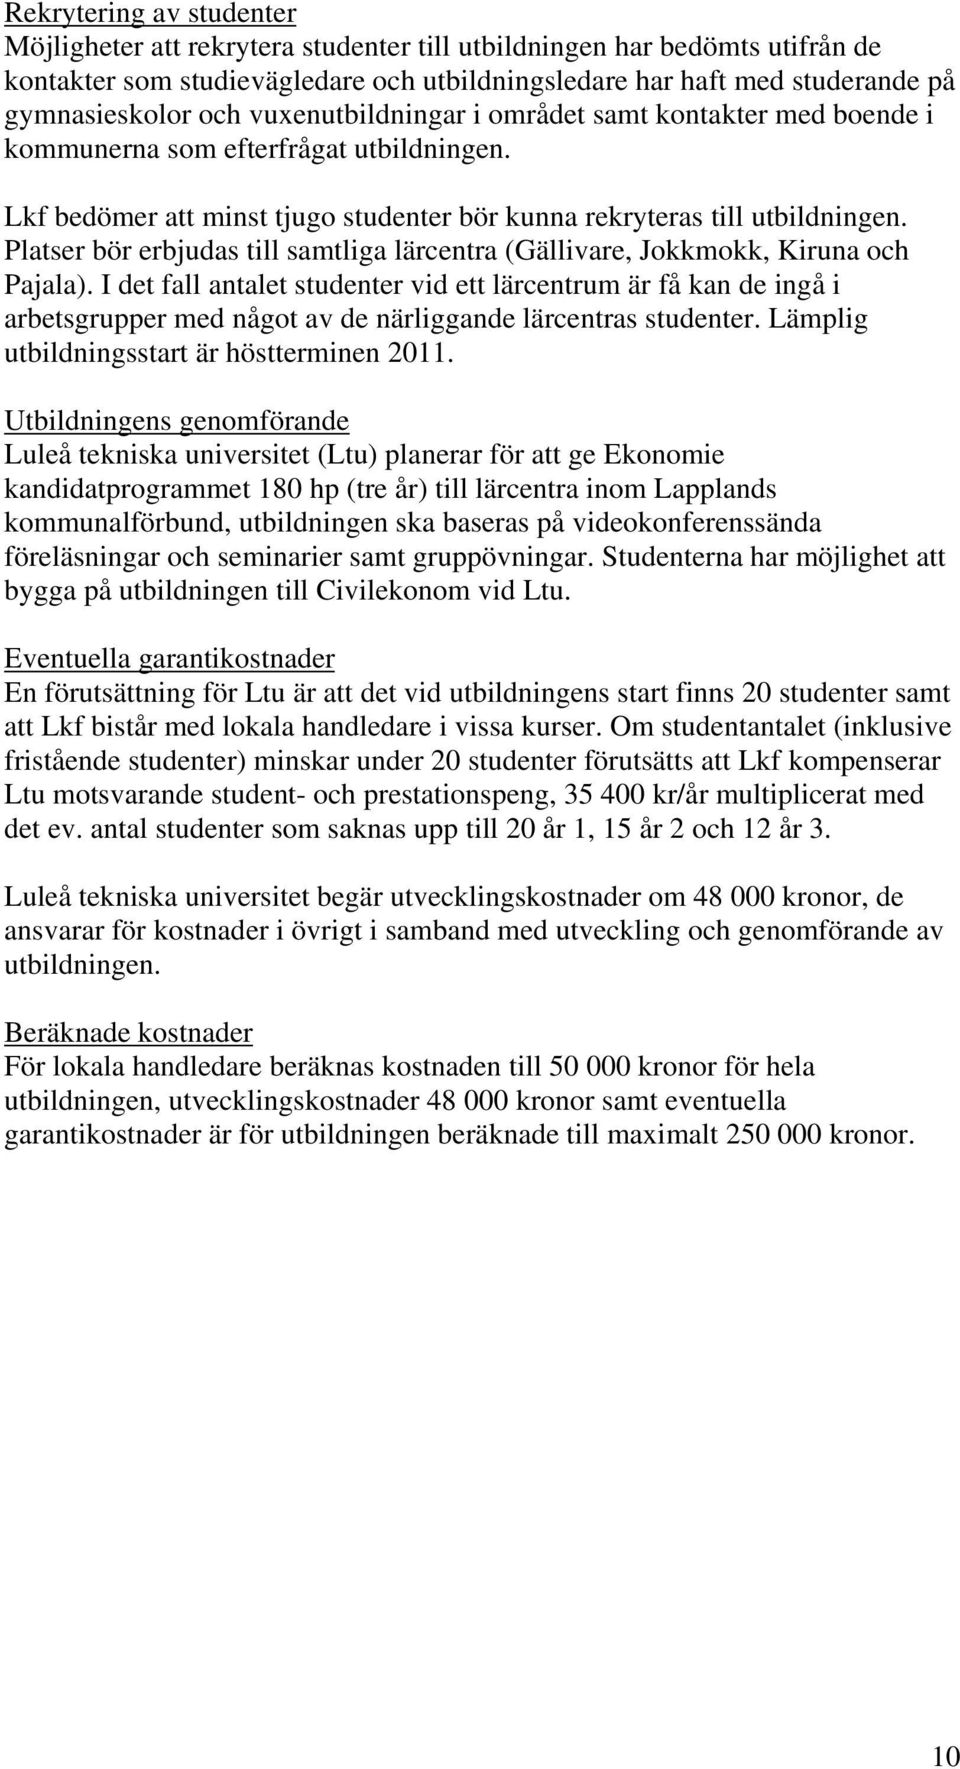 Platser bör erbjudas till samtliga lärcentra (Gällivare, Jokkmokk, Kiruna och Pajala).